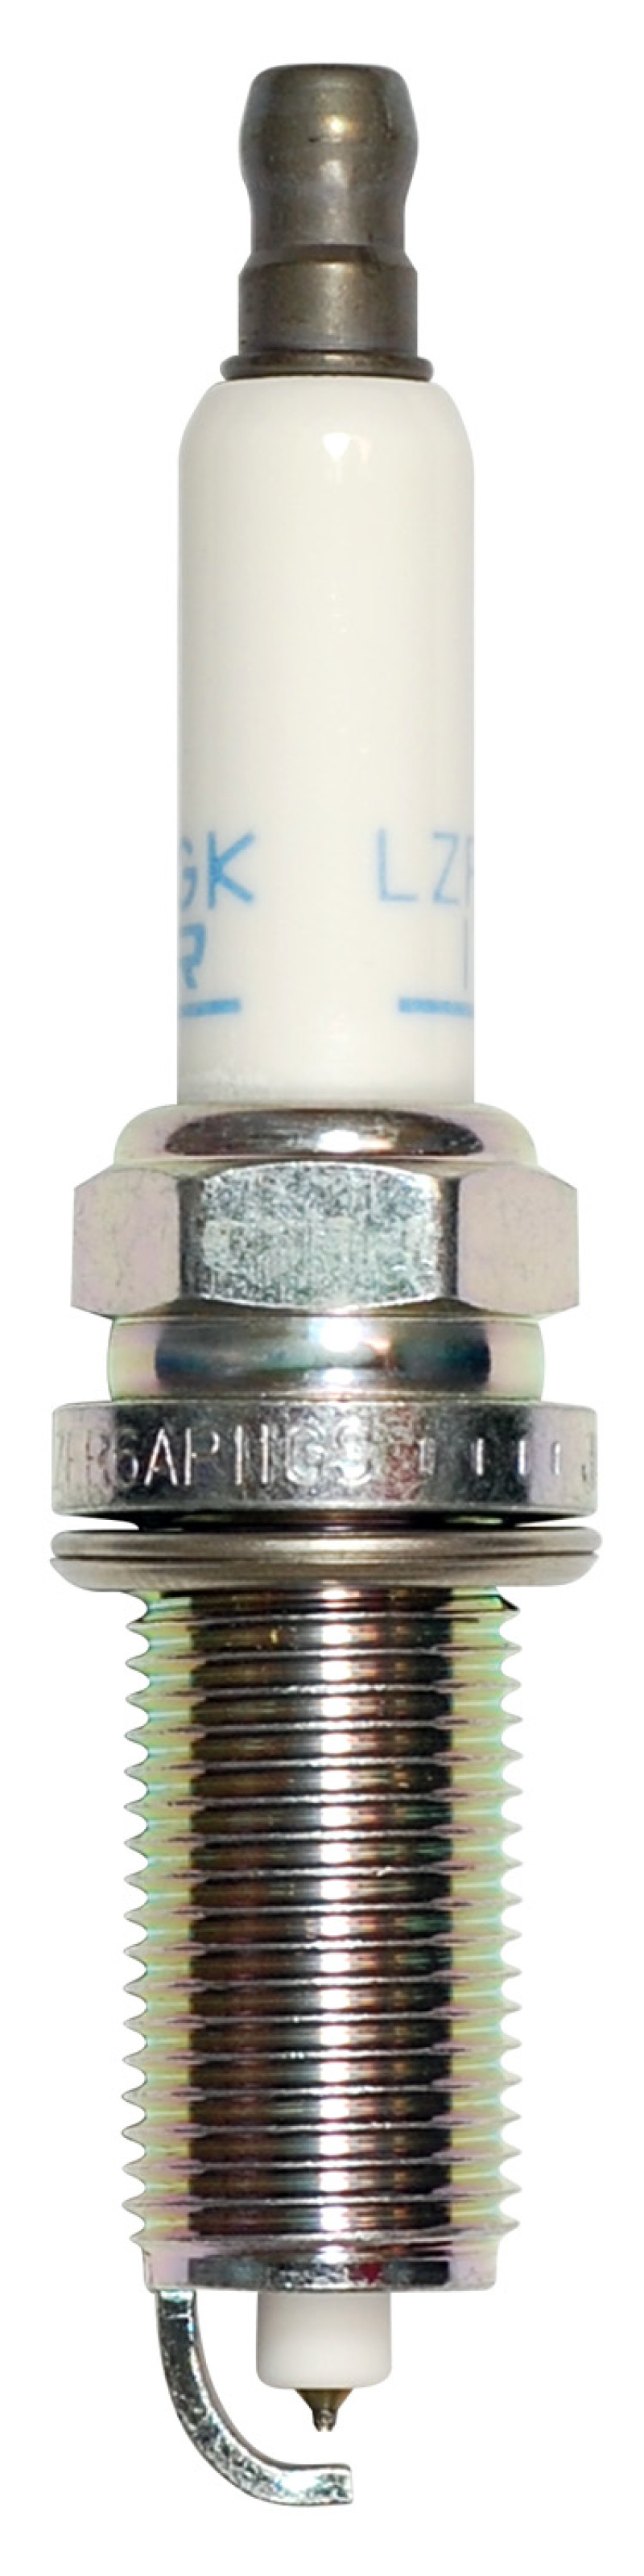 NGK Laser Platinum Spark Plug Box of 4 (LZFR6AP11GS) - 95712